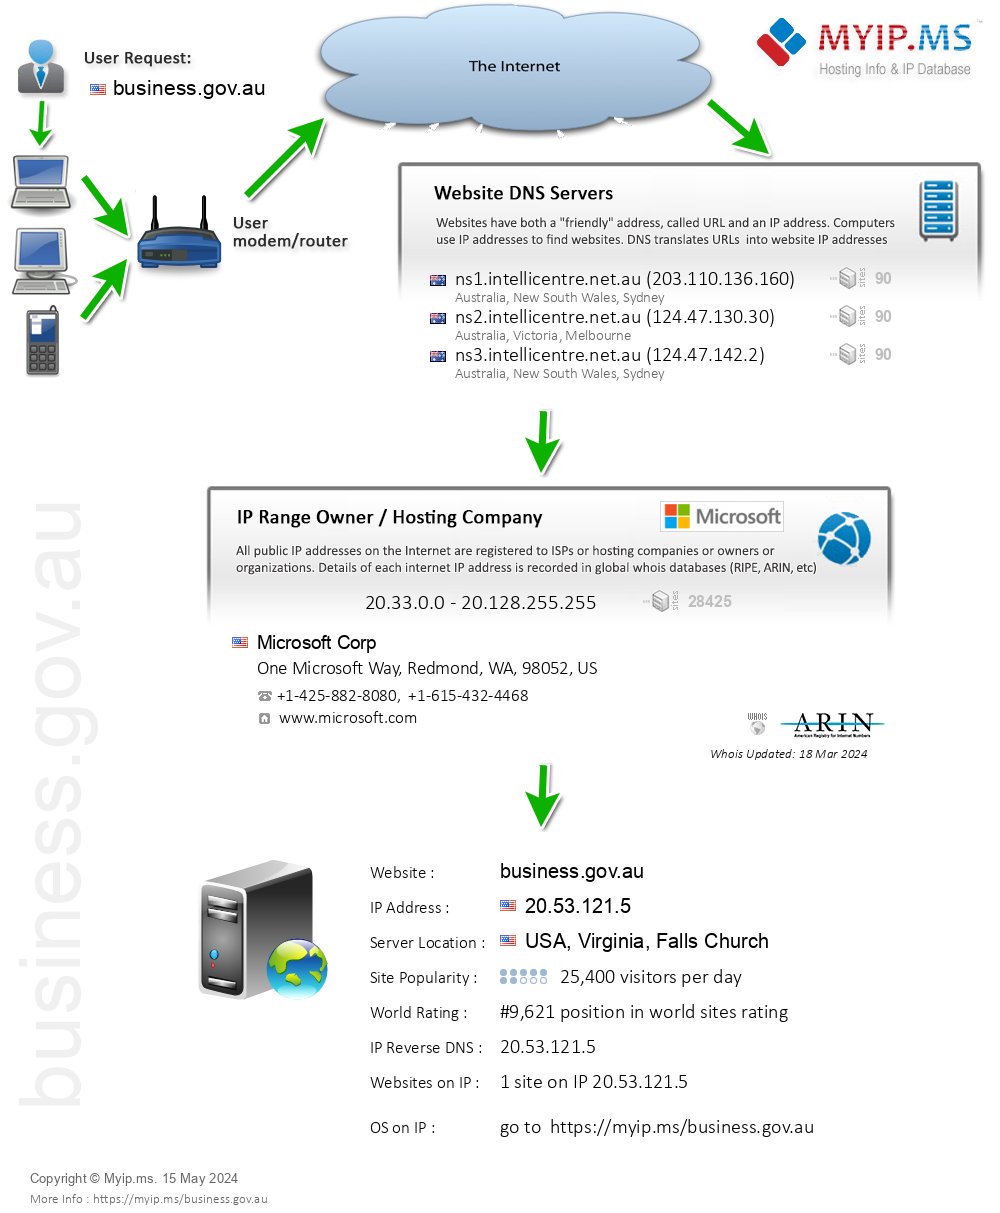 Business.gov.au - Website Hosting Visual IP Diagram